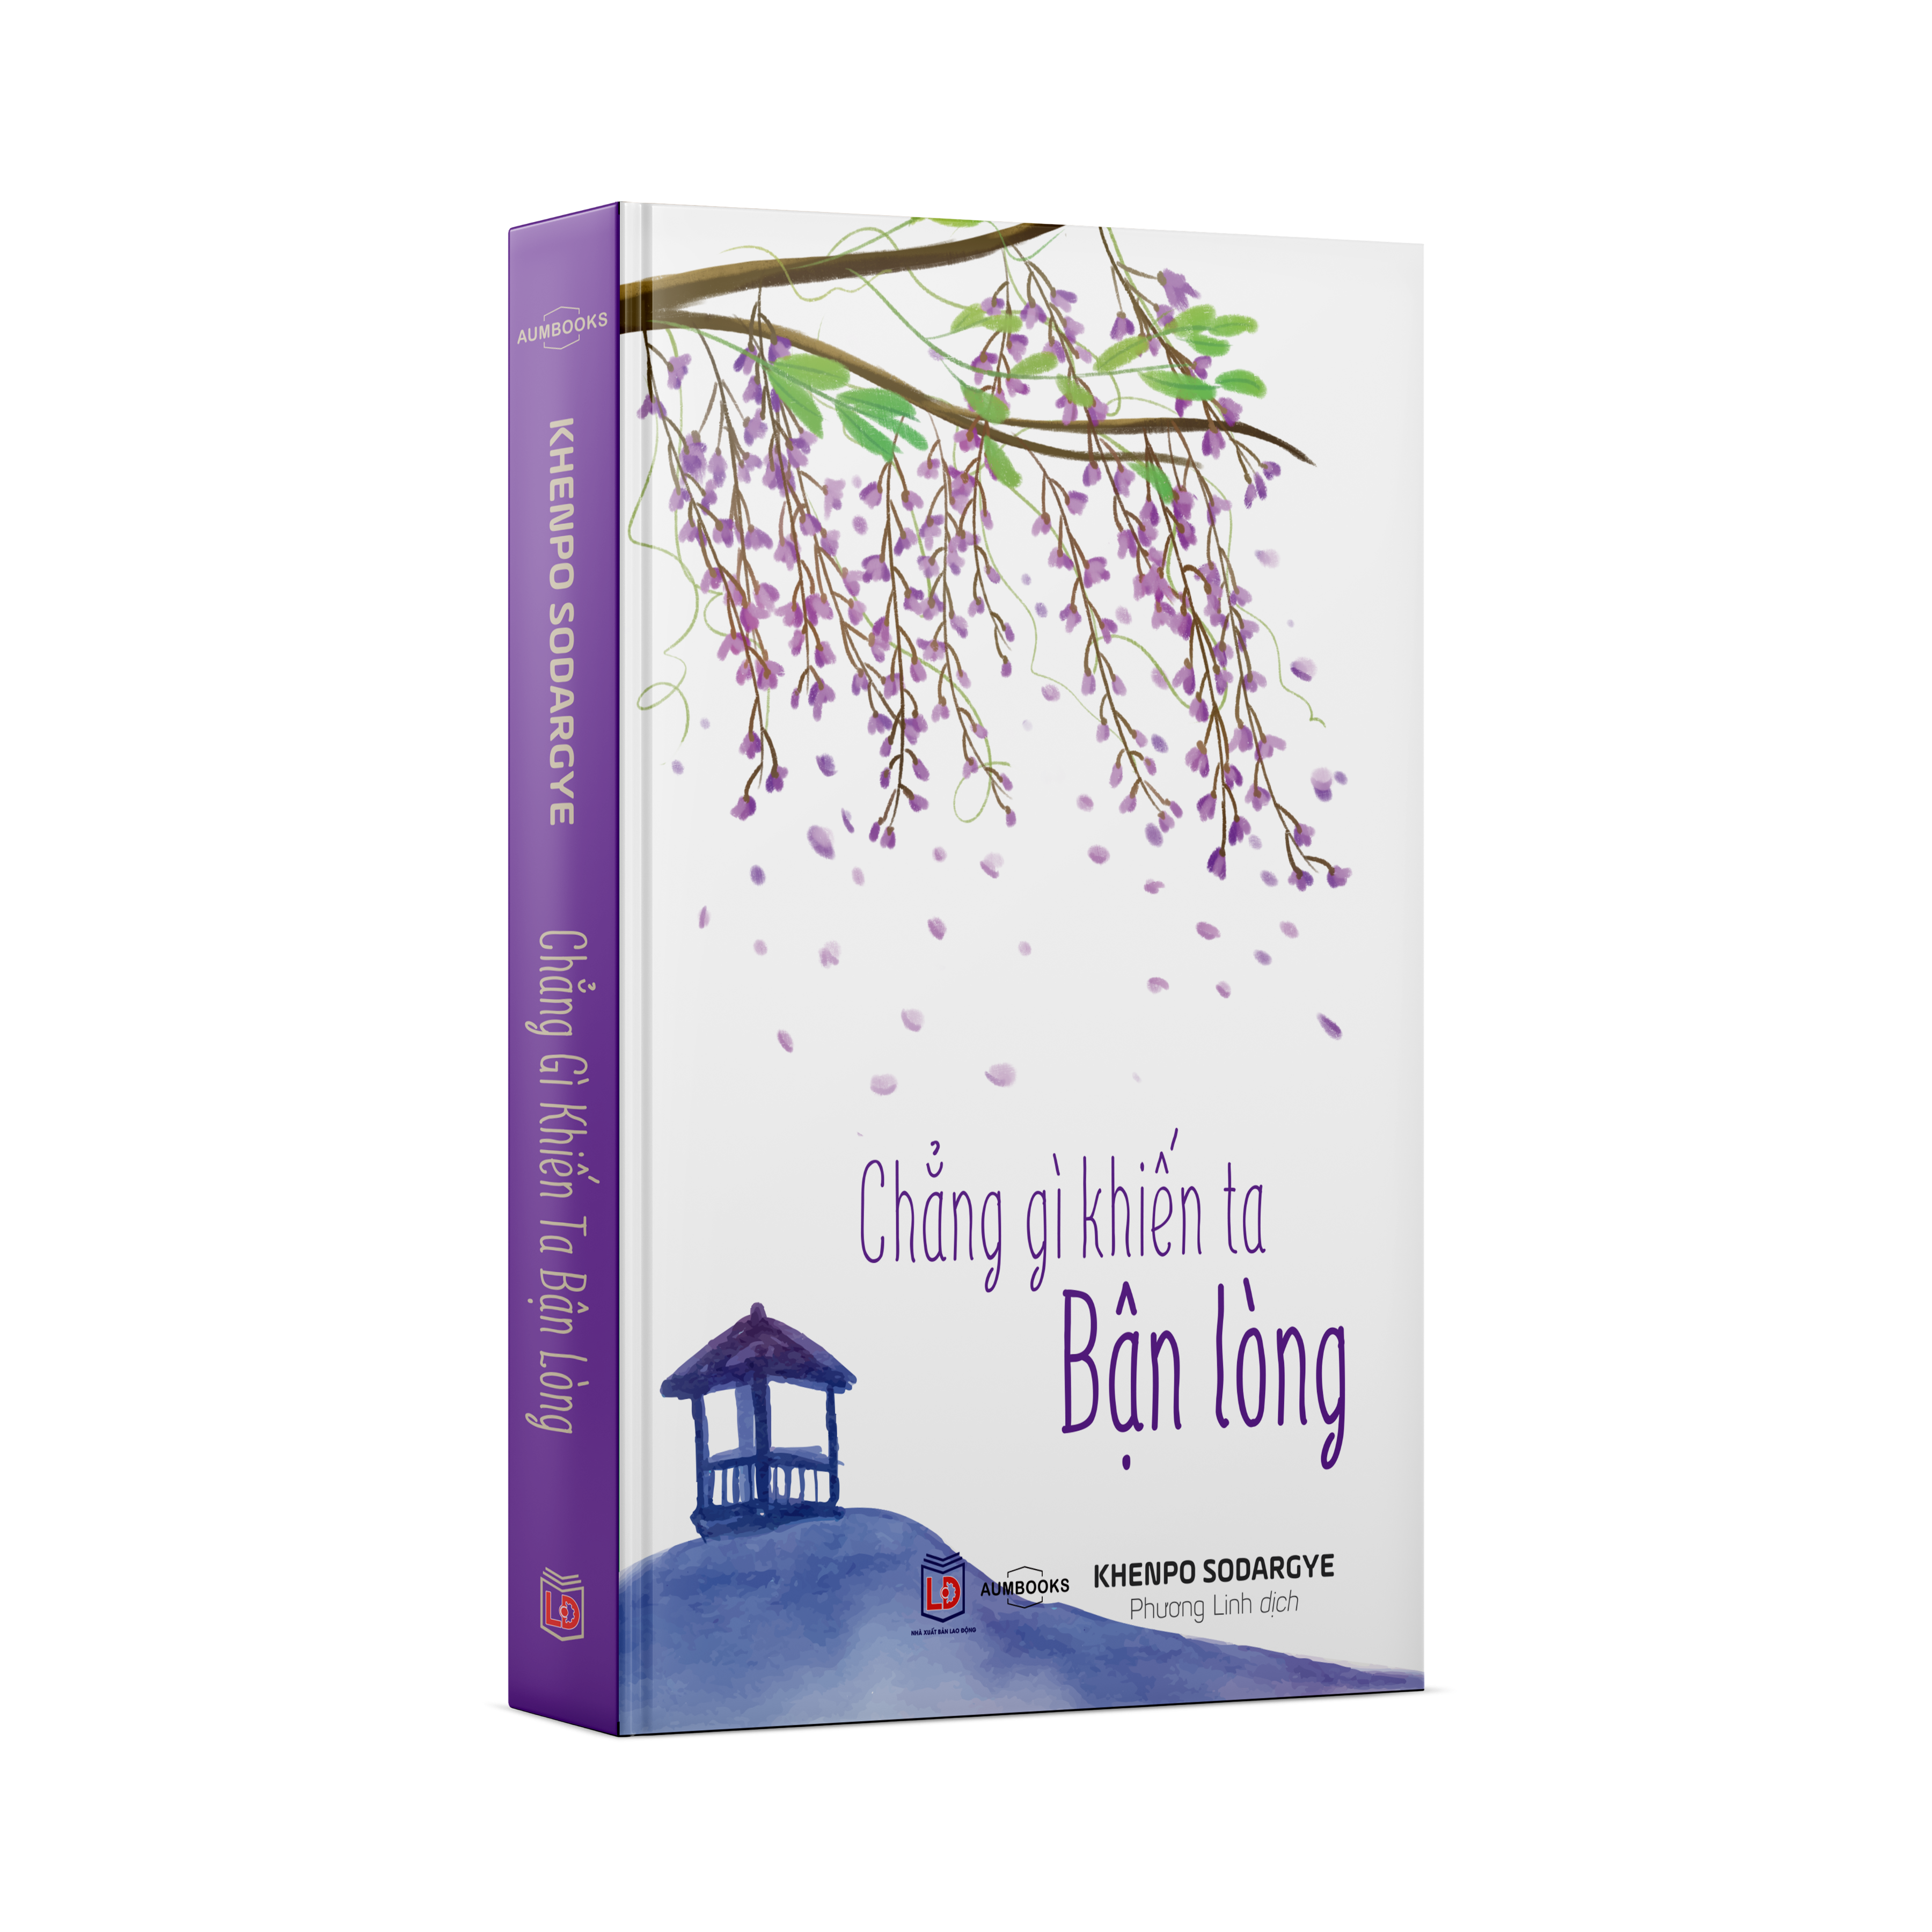 Combo Sách An Trú Trong Hiện Tại - Sách Phật Giáo, Nghệ Thuật, Văn Hóa Tác Giả Khenpo Sodargye - Hiệu Sách Genbooks, bìa mềm, in màu